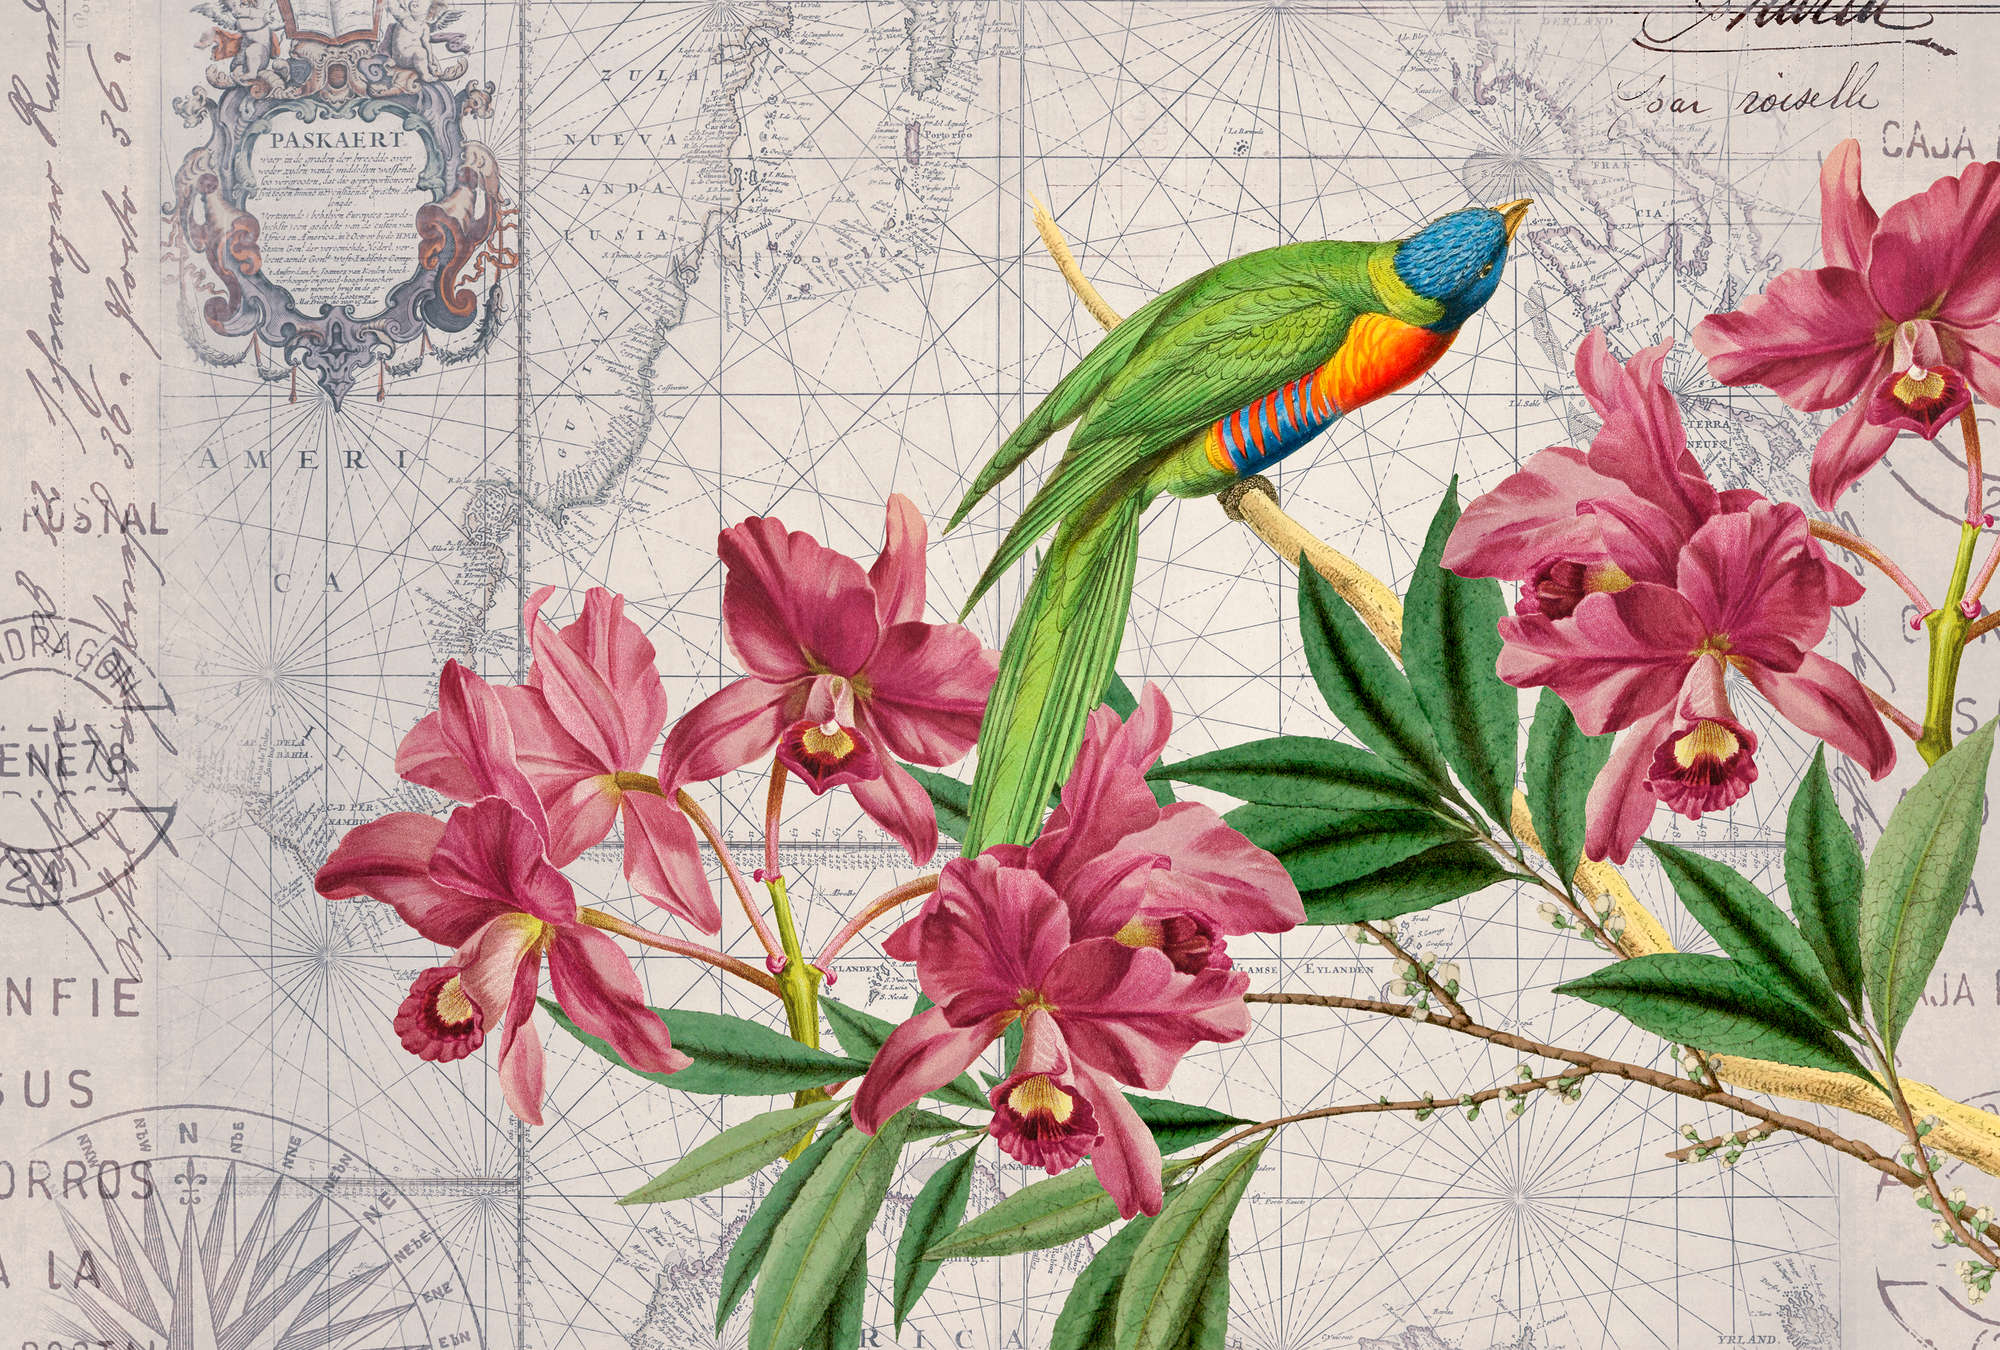             Papel pintado con aspecto de mapa vintage, loro y flores
        